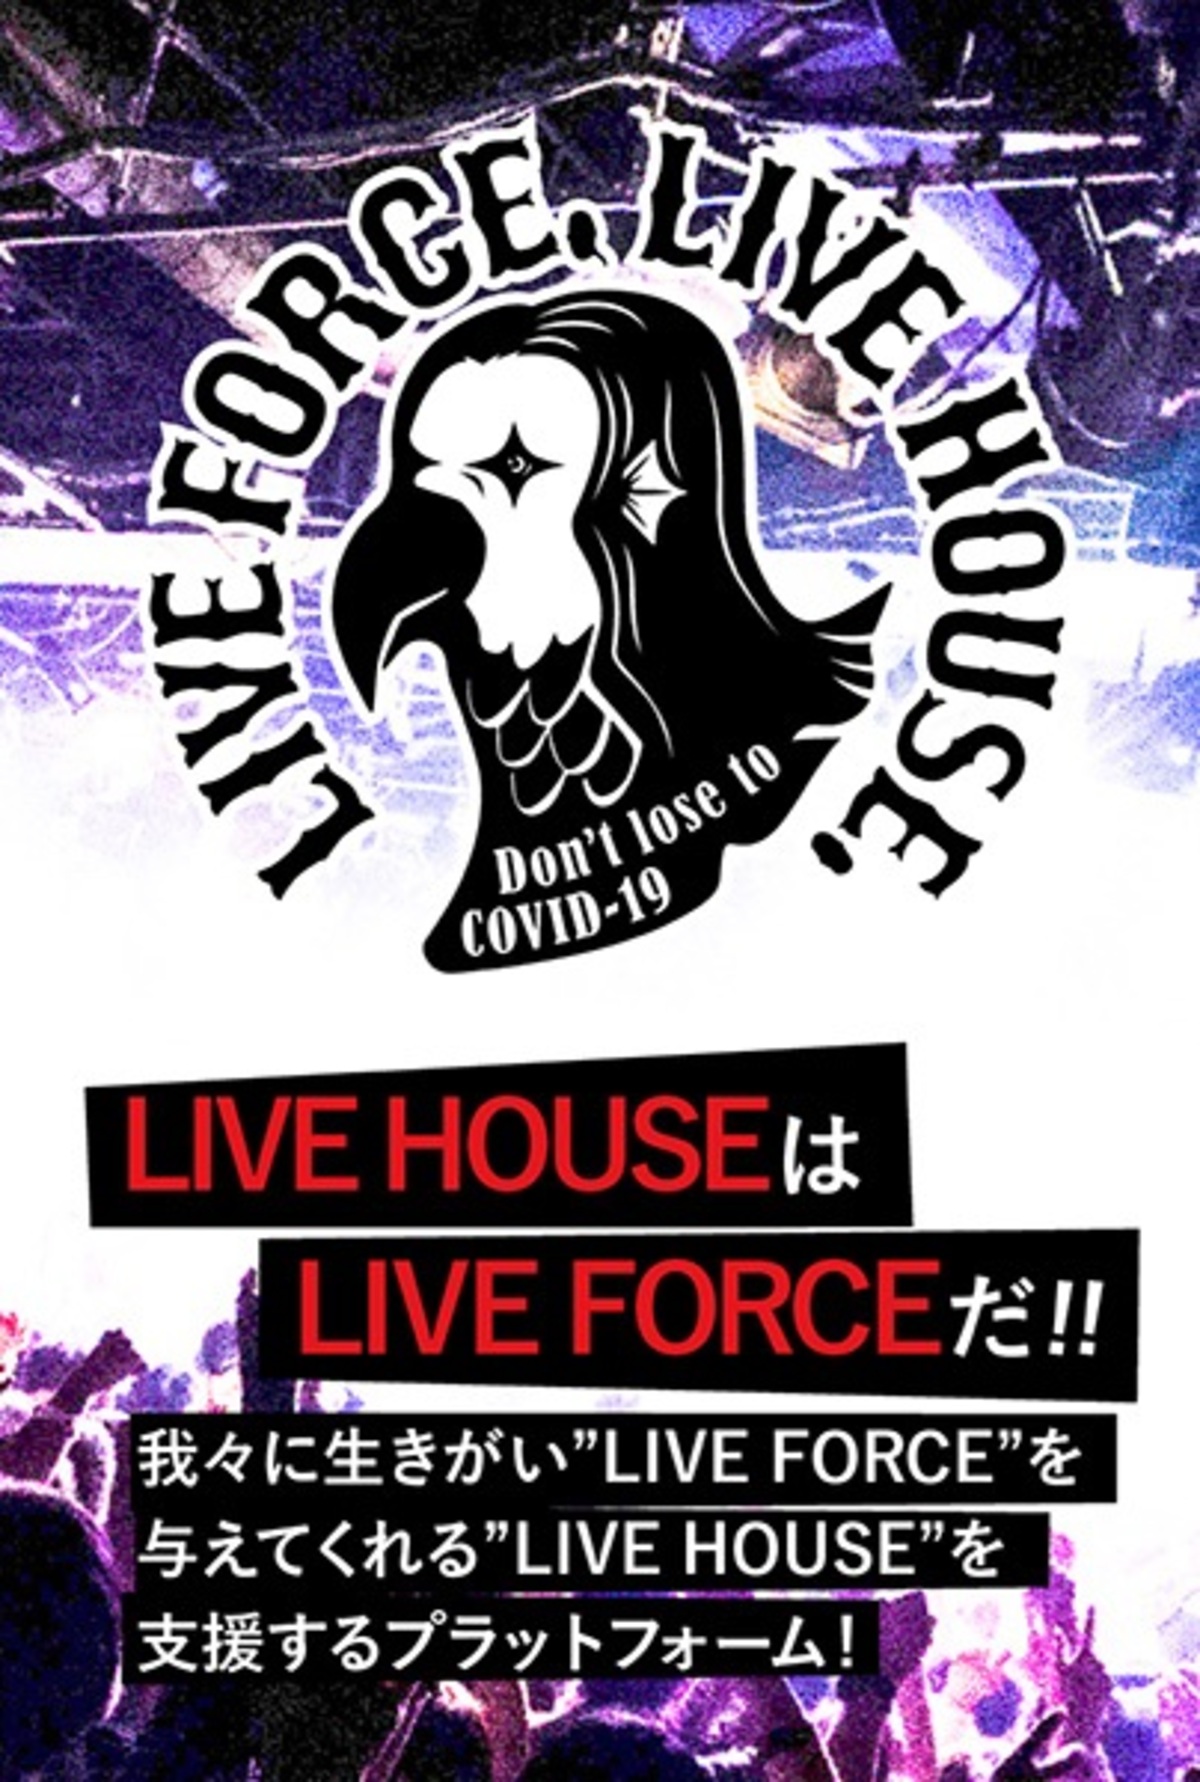 ライヴハウス支援プロジェクト Live Force Live House 5 15より第2